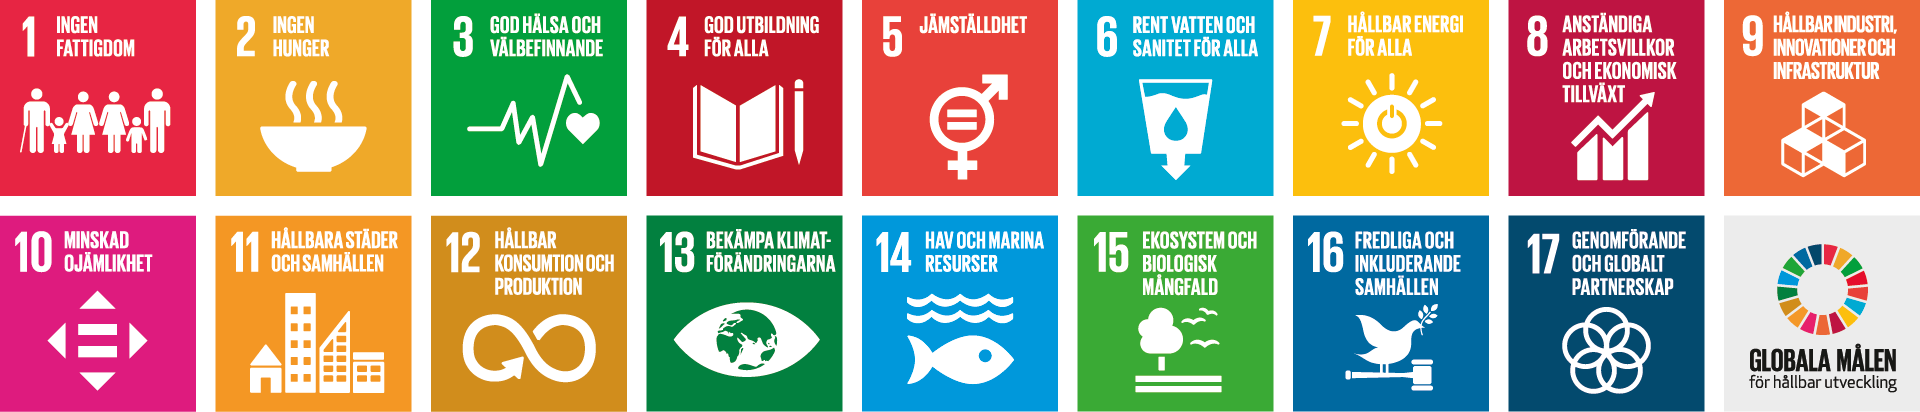 Grafisk bild med FN:s 17 globala hållbarhetsmål